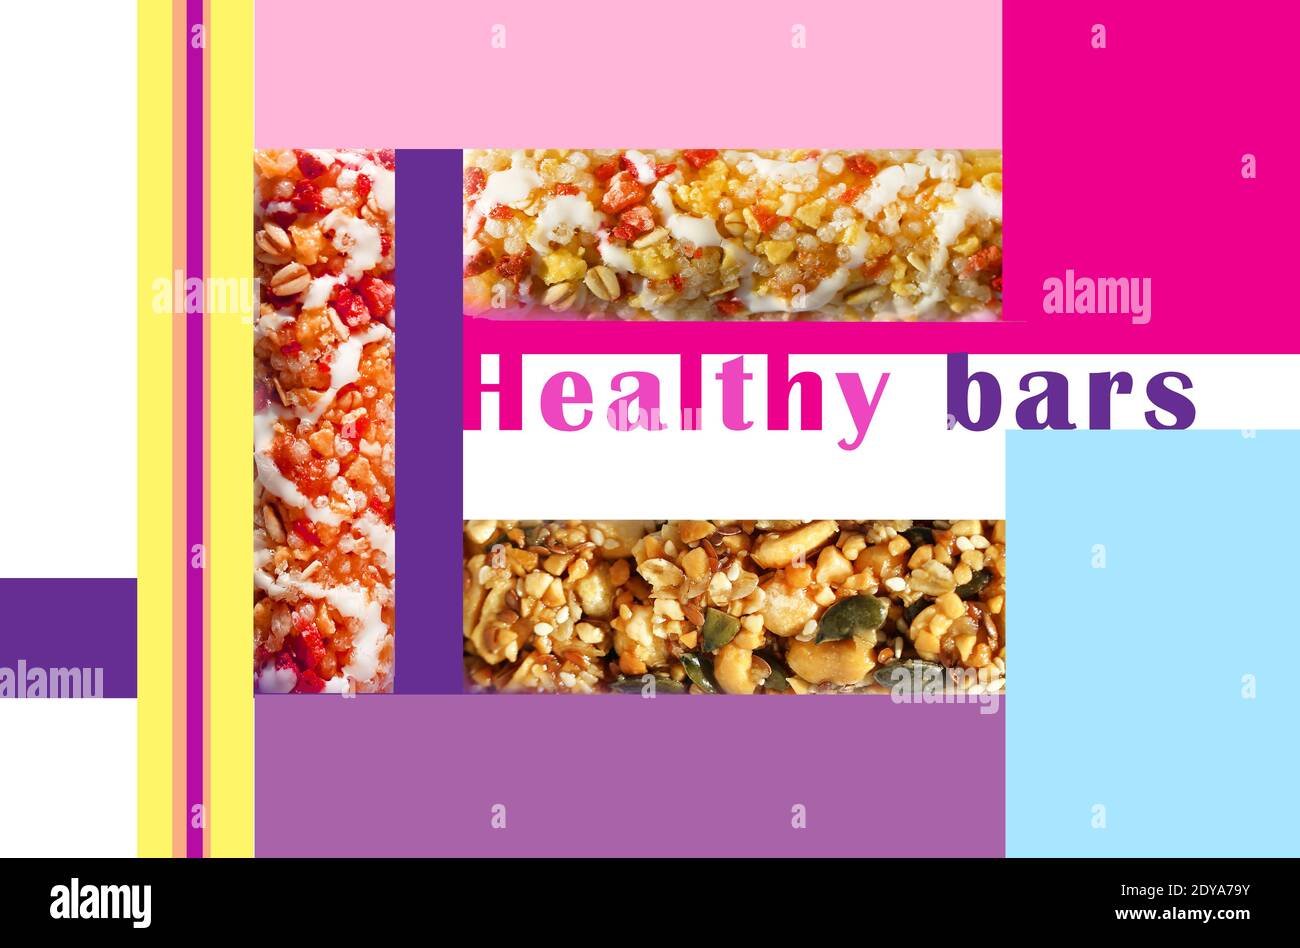 Ilustración de un cartel retro anunciando barras de cereales con frutos secos y bayas Foto de stock